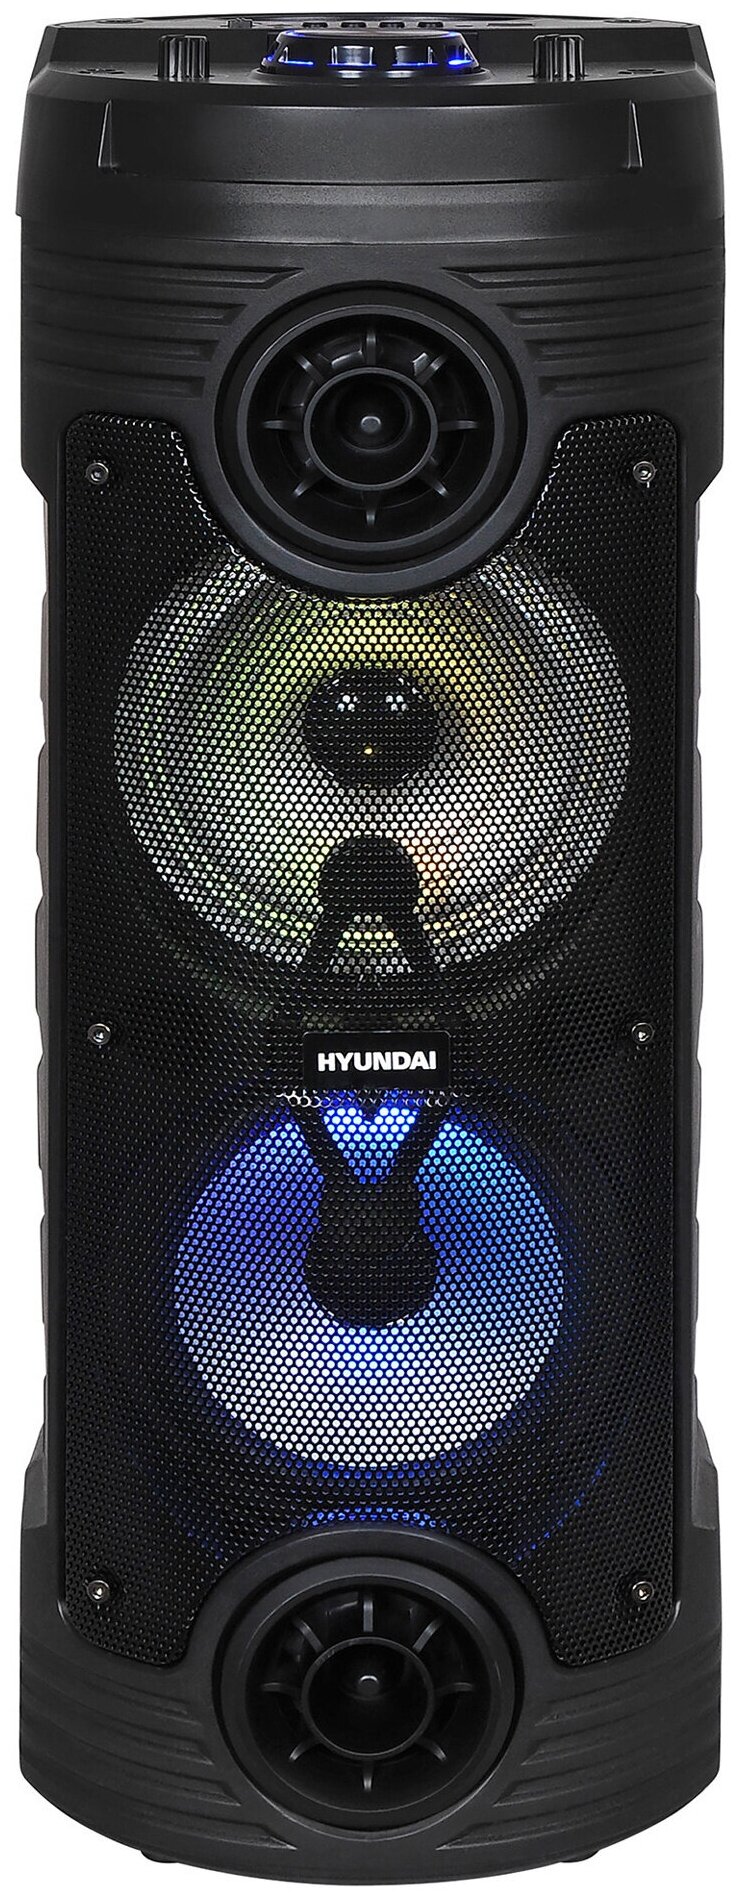 Минисистема Hyundai H-MC170 черный 80Вт/FM/USB/BT/SD/MMC